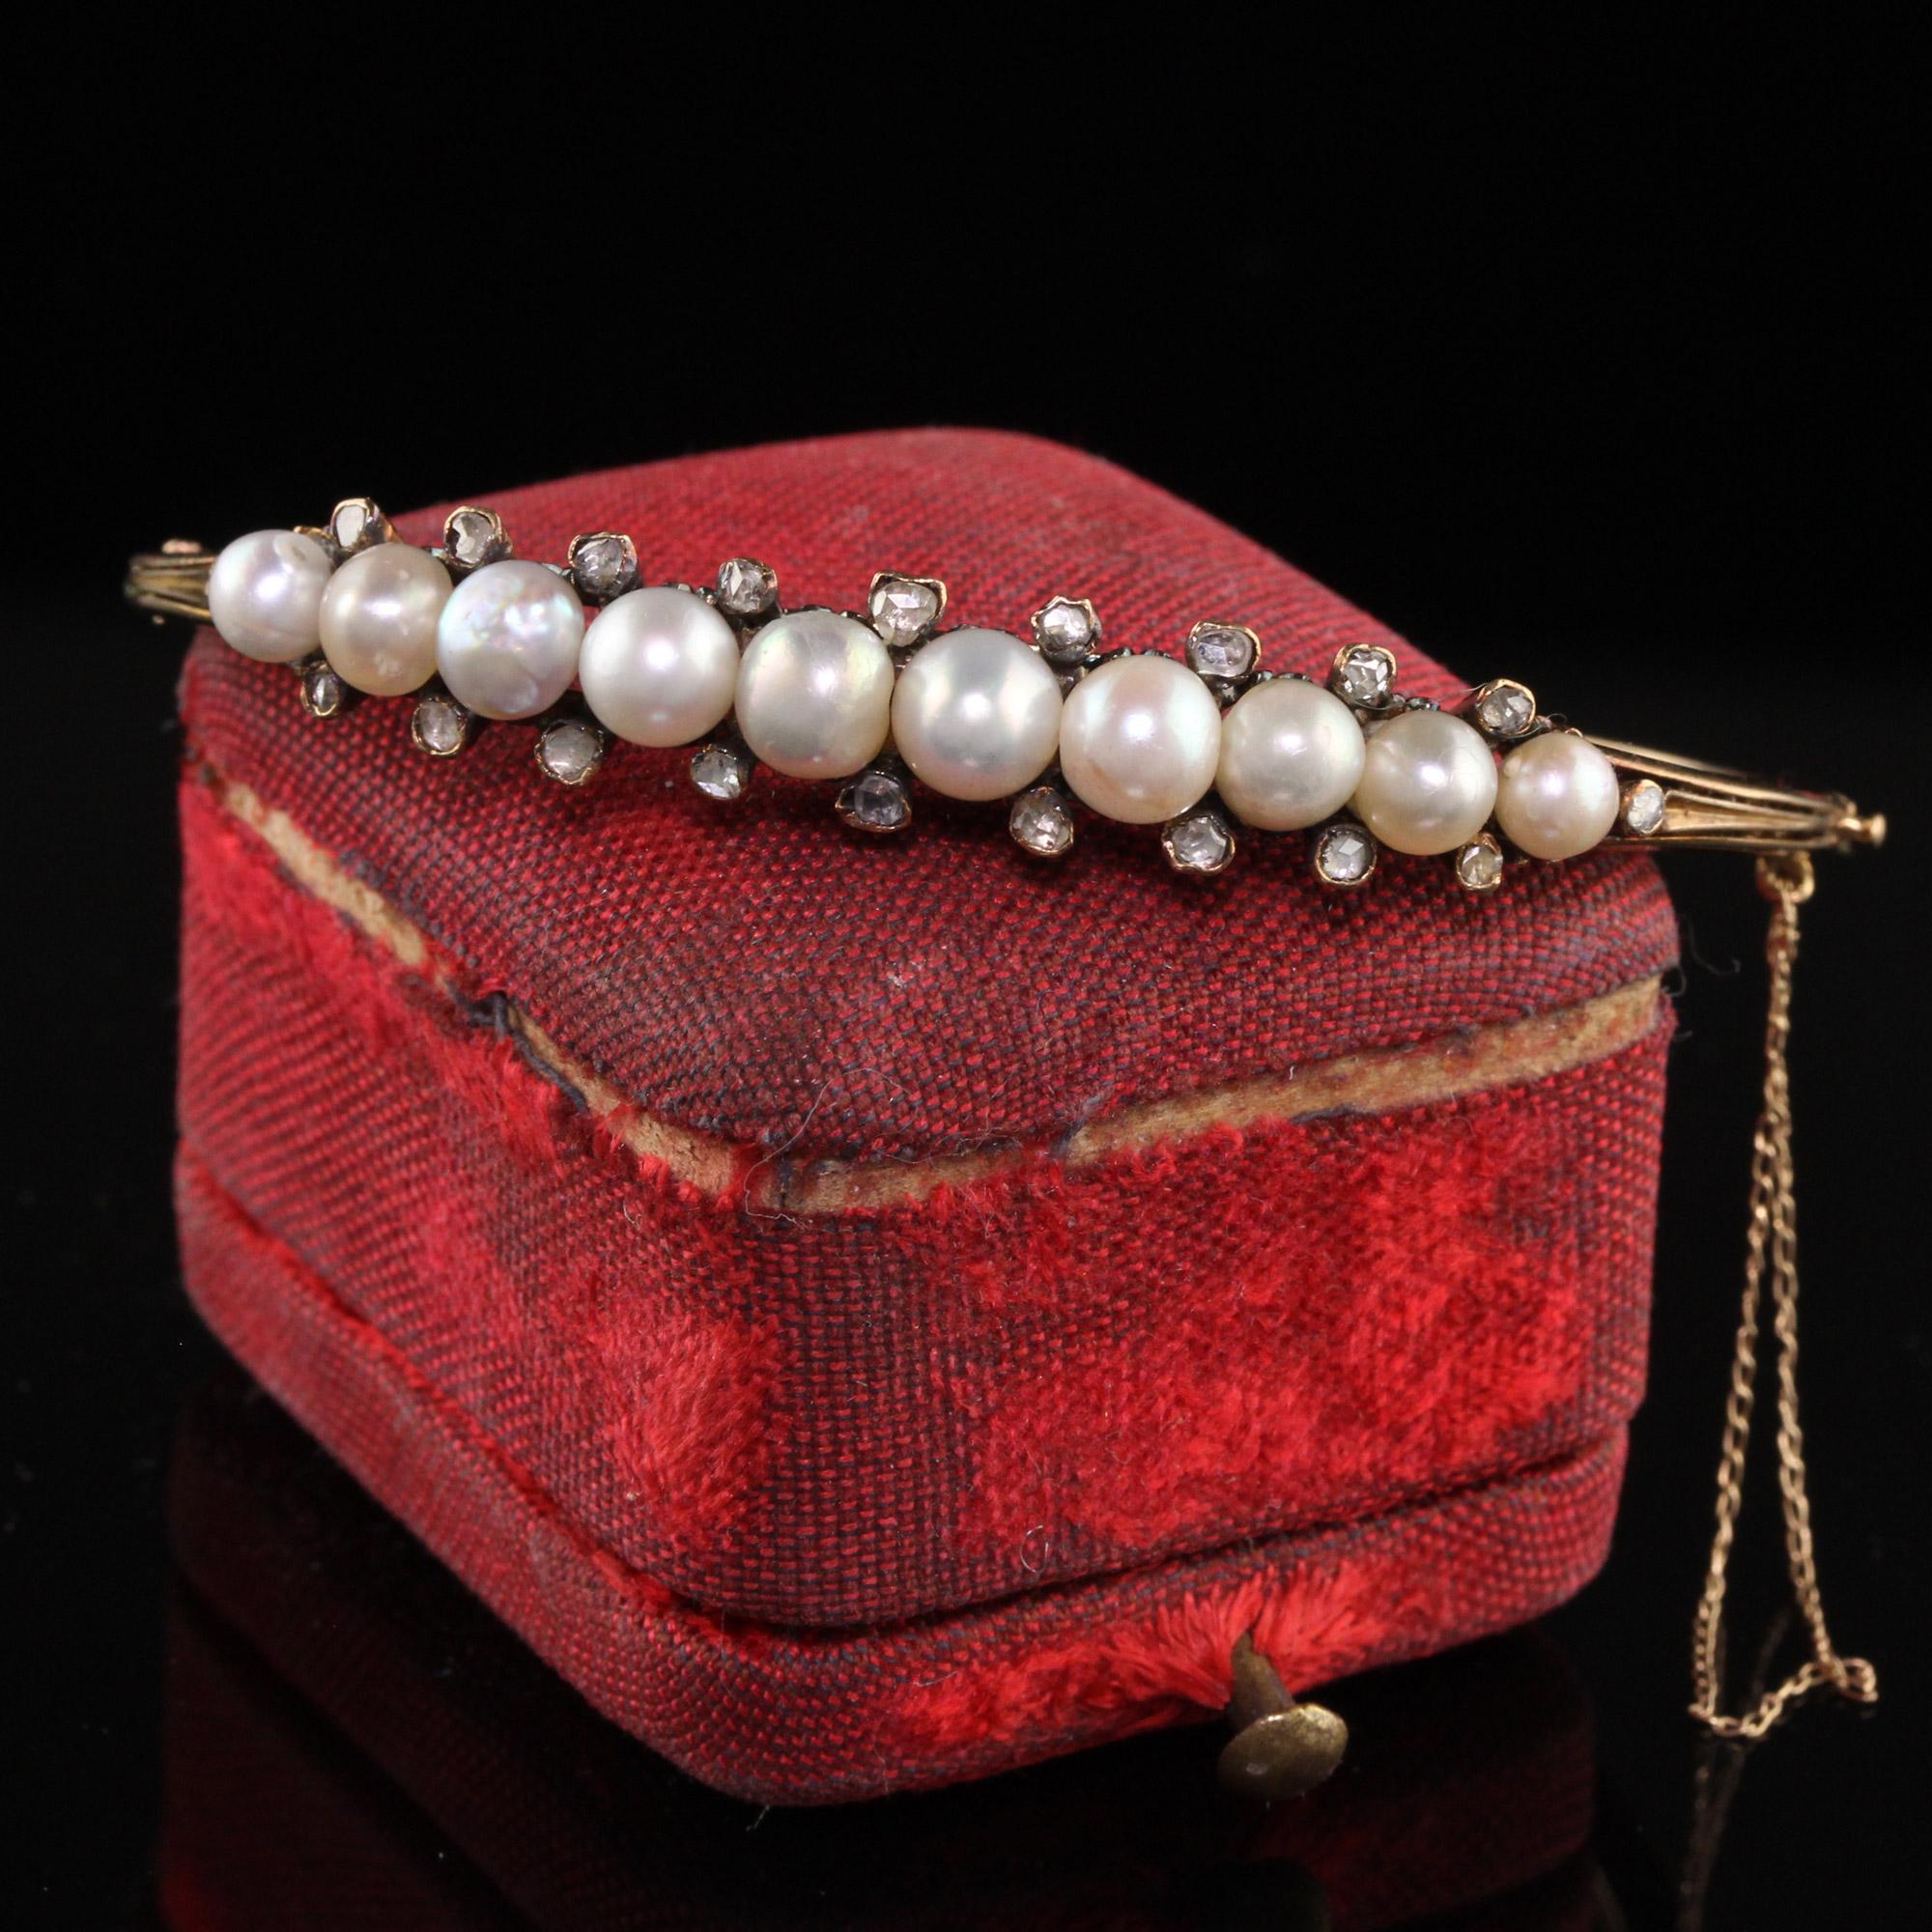 Schöne antike viktorianische 18K Gelbgold natürliche Perle Rose Cut Diamond Armreif. Dieser wunderschöne Armreif ist aus 18 Karat Gelbgold gefertigt. Das Oberteil fasst zehn natürliche Perlen und ist ober- und unterhalb jeder Perle mit einem